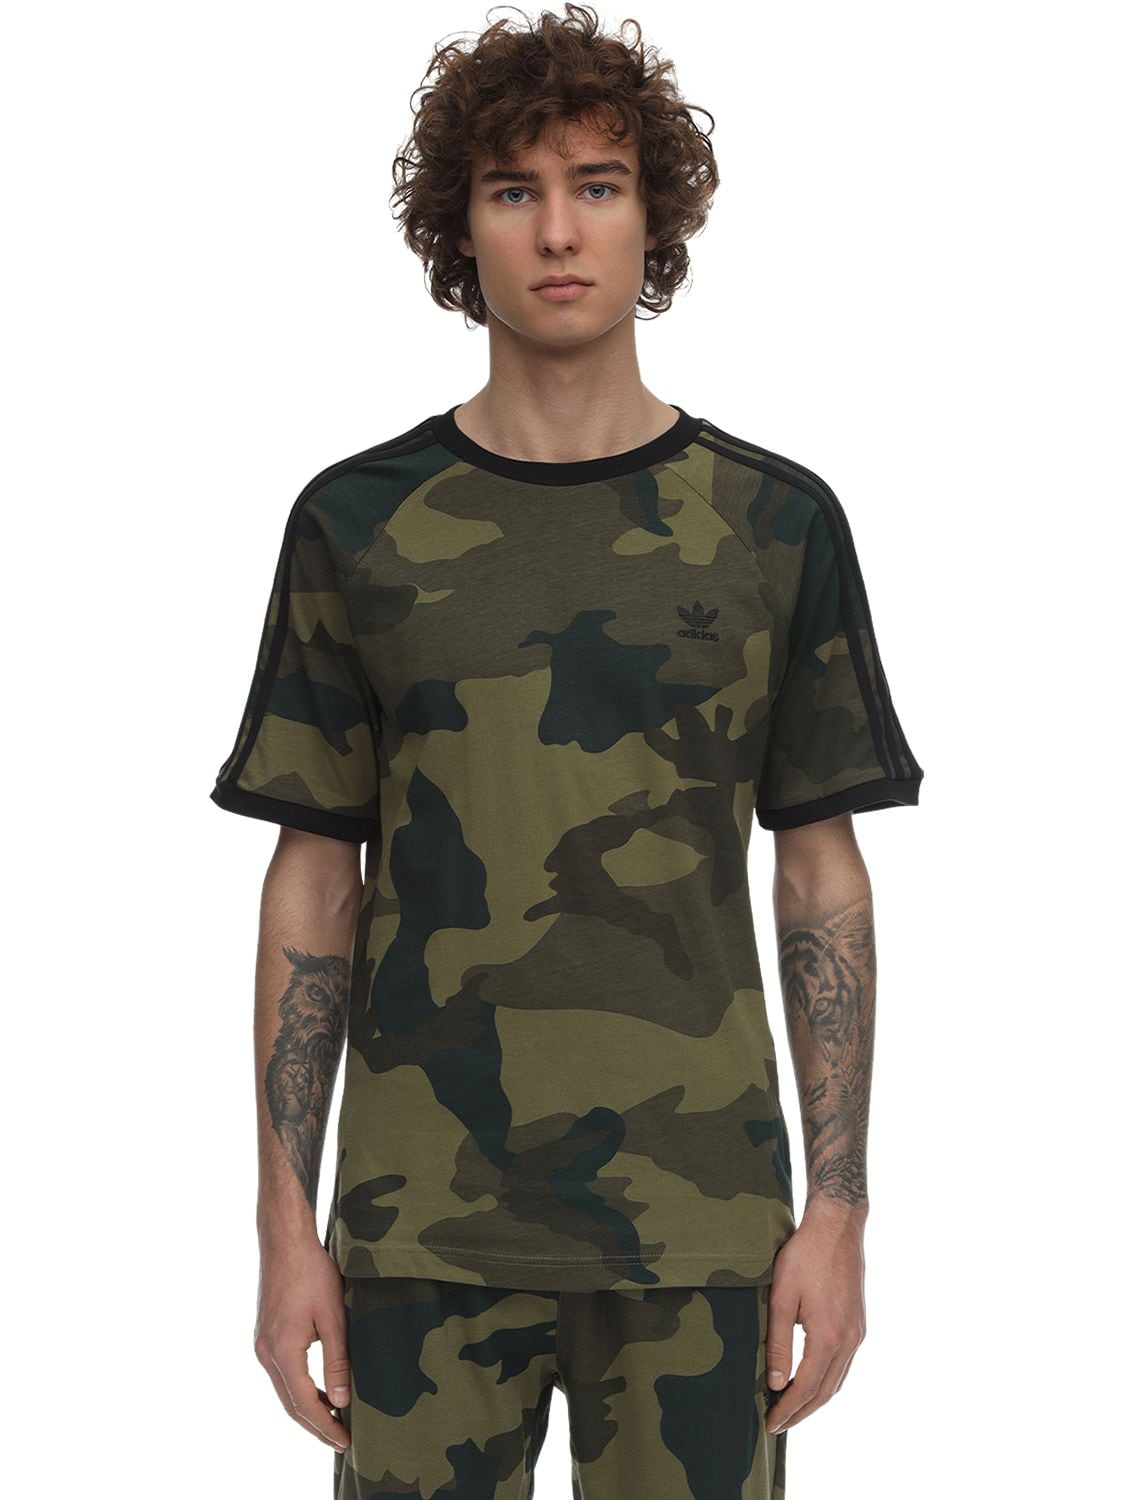 army adidas shirt